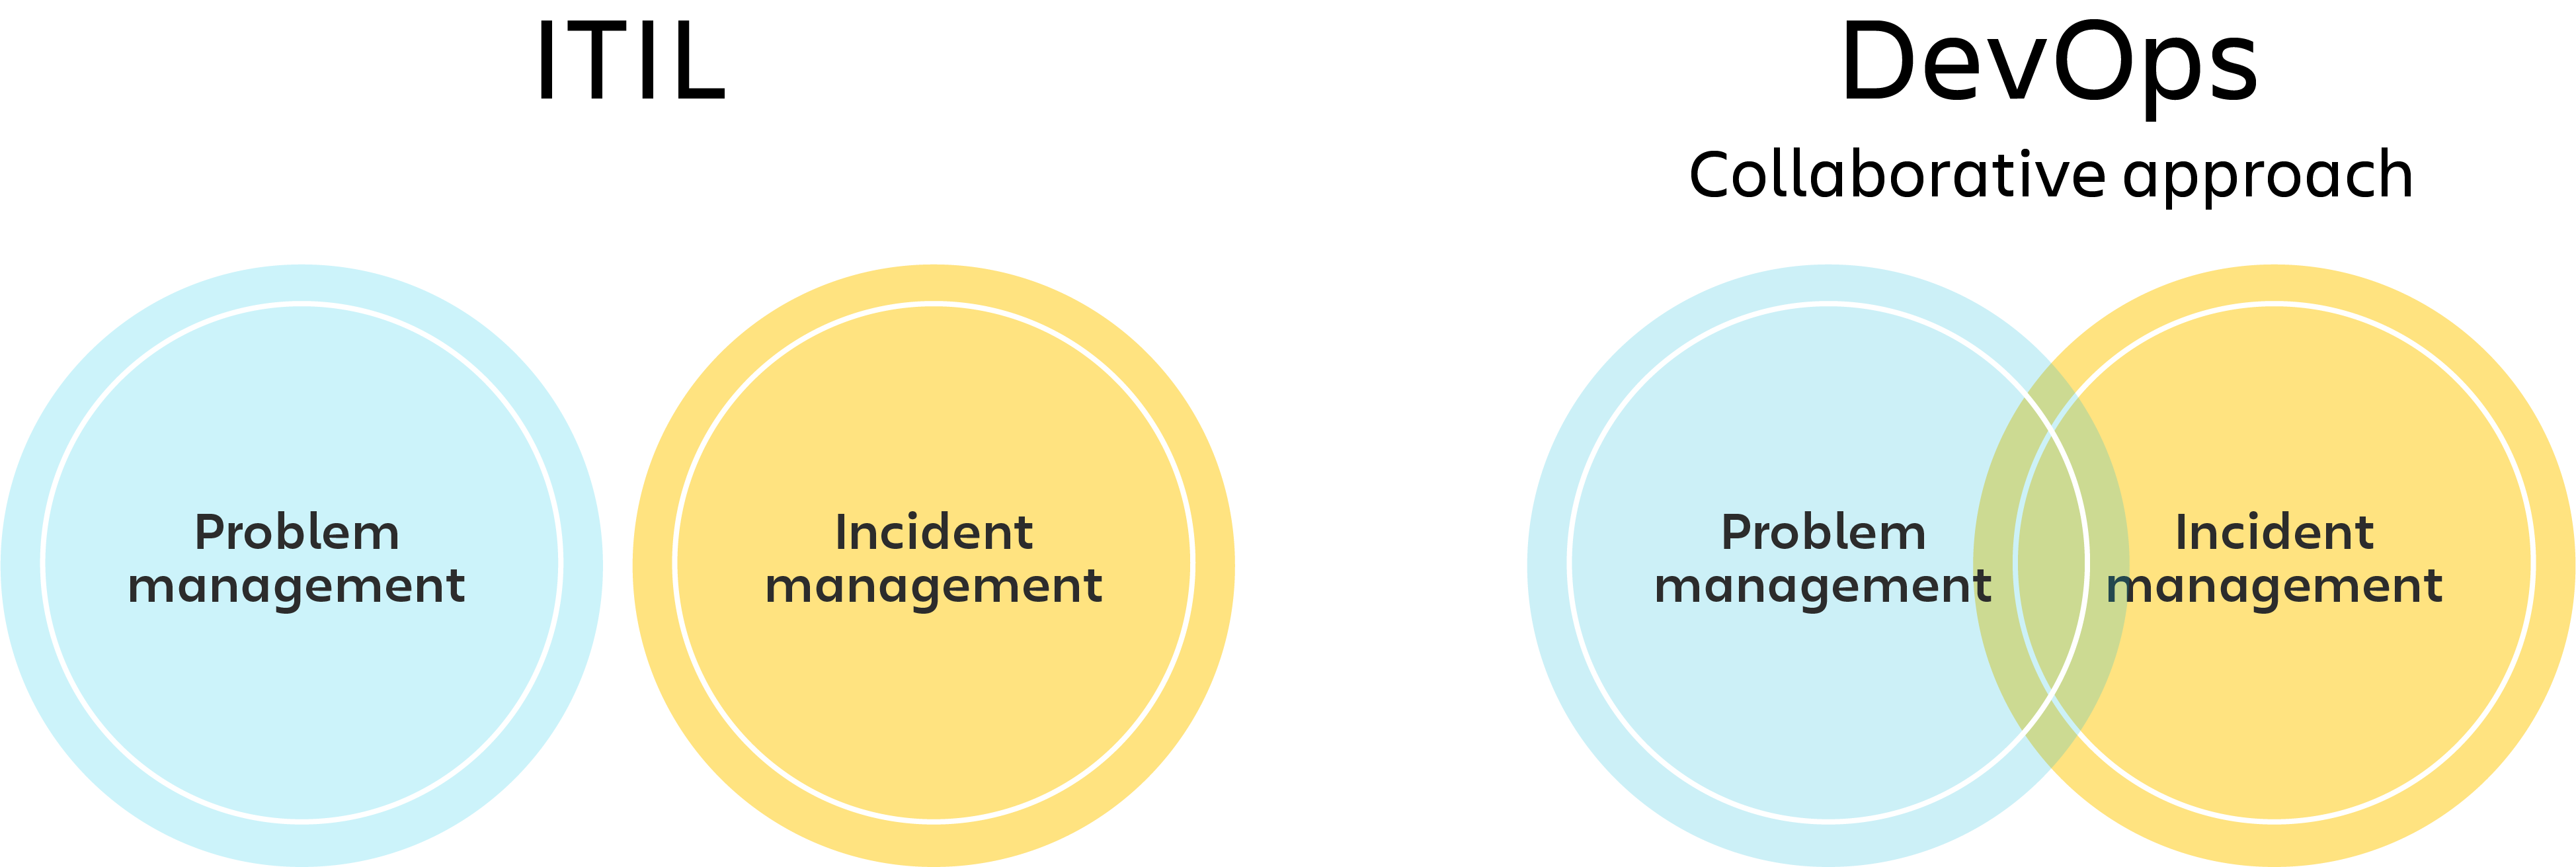 Gráfico de ITIL con un diagrama de círculos independientes para la gestión de incidentes y la gestión de problemas, y gráfico de DevOps en forma de diagrama de Venn para la gestión de incidentes y problemas